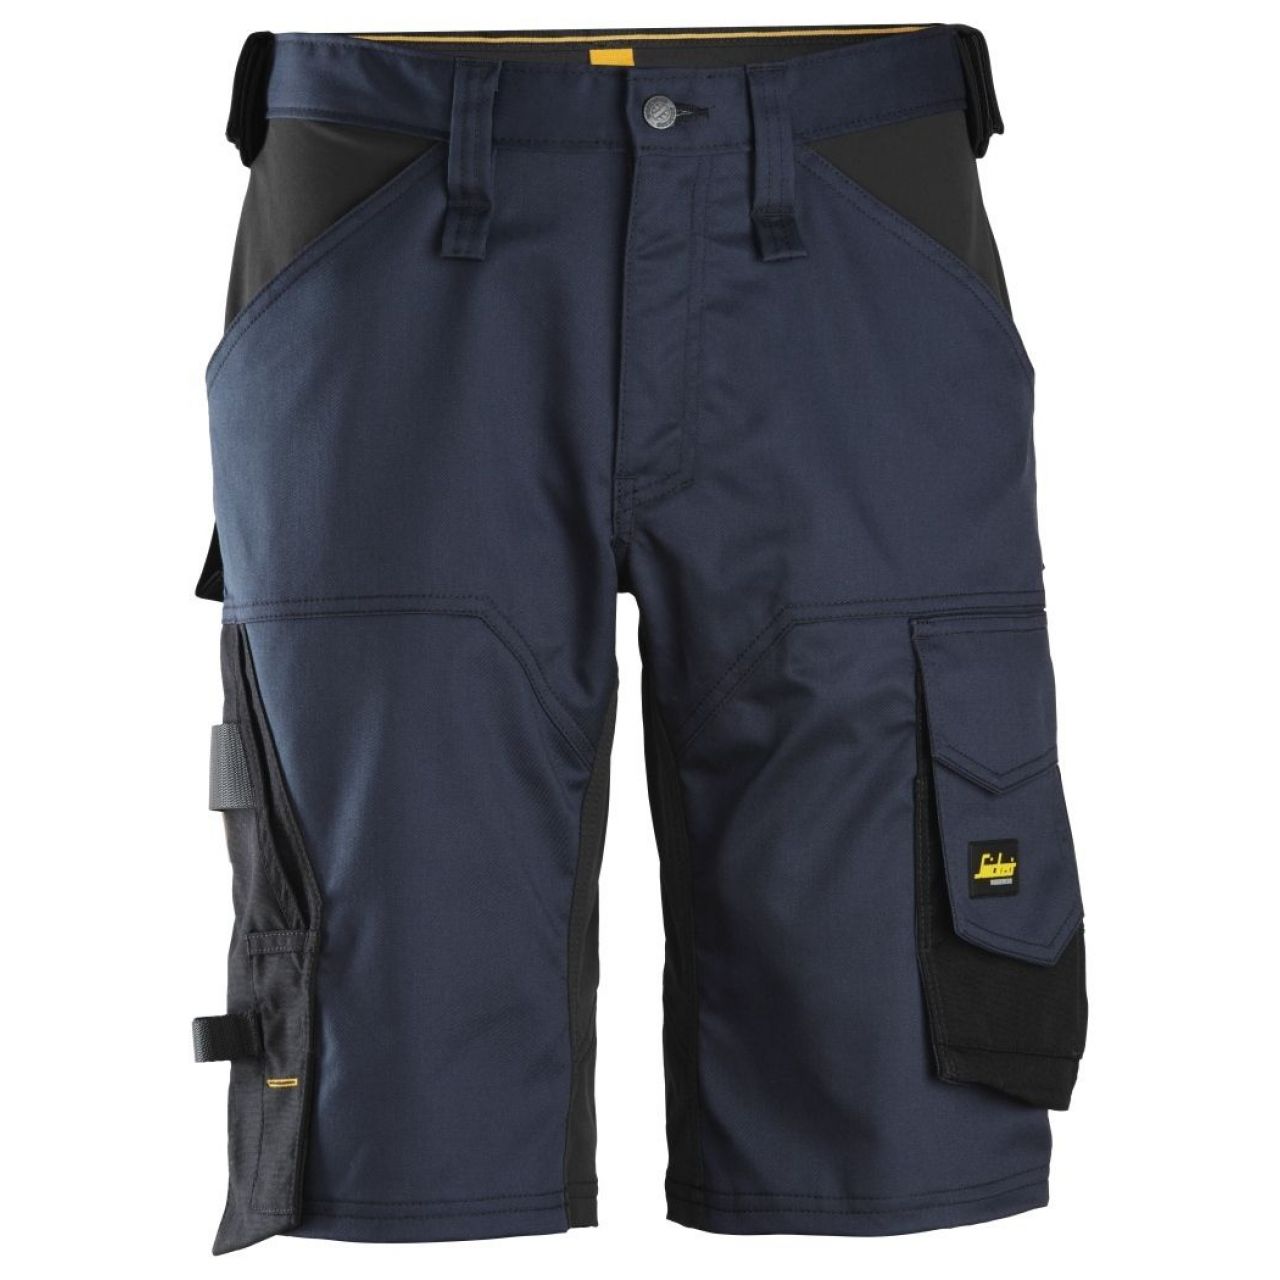 Pantalon corto elastico holgado AllroundWork azul marino-negro talla 046